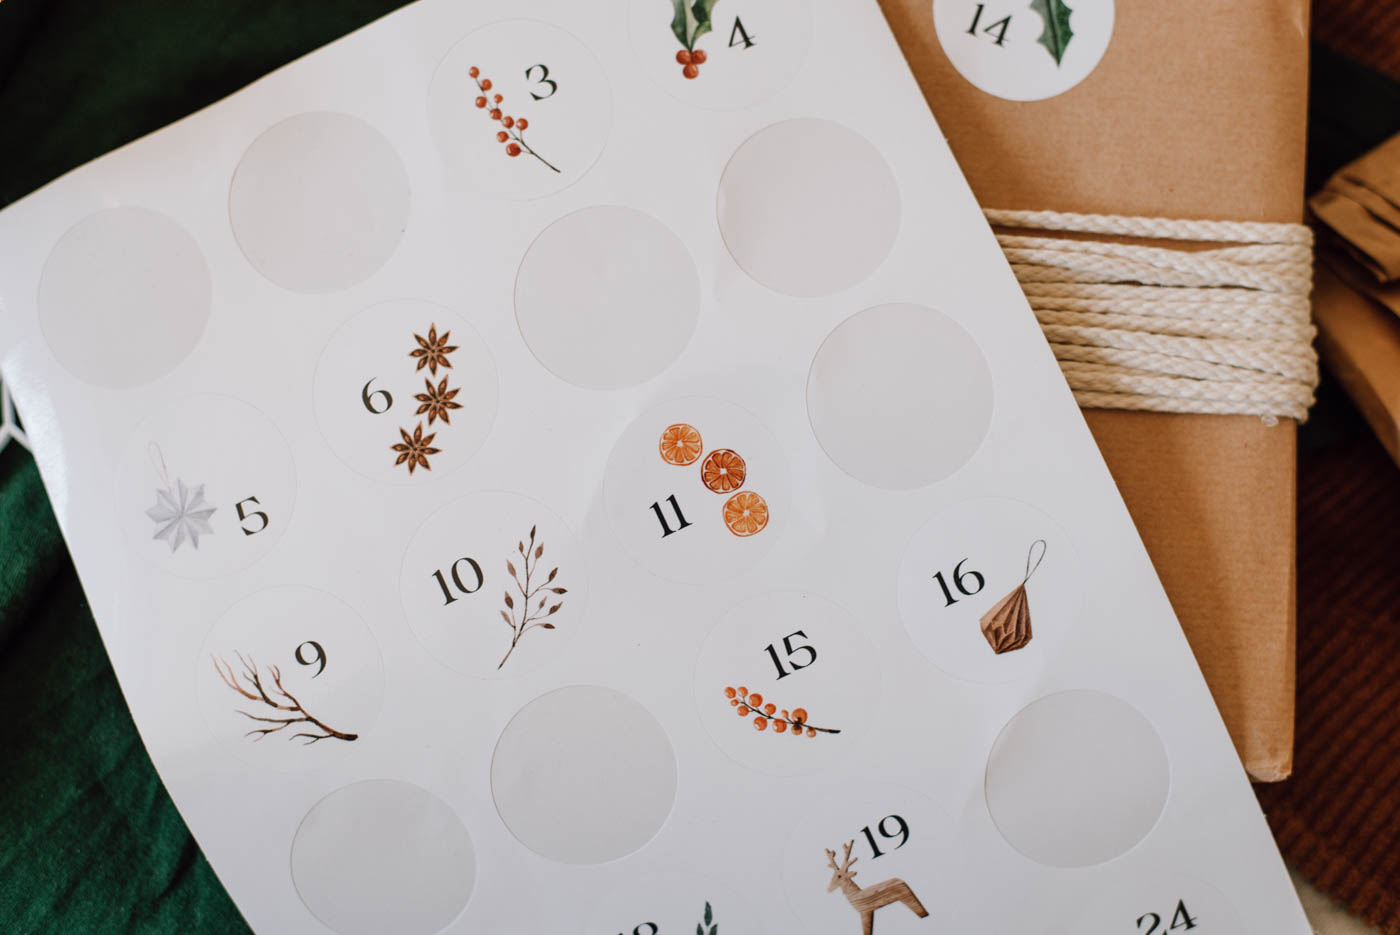 Unser wunderschönes Adventskalender-Set, zum Basteln und selbst befüllen, begleitet dich durch die besinnliche Adventszeit.
Das Set enthält mit 24 Aquarell Papieraufkleber mit Nummern von 1-24 für den Weihnachtskalender.